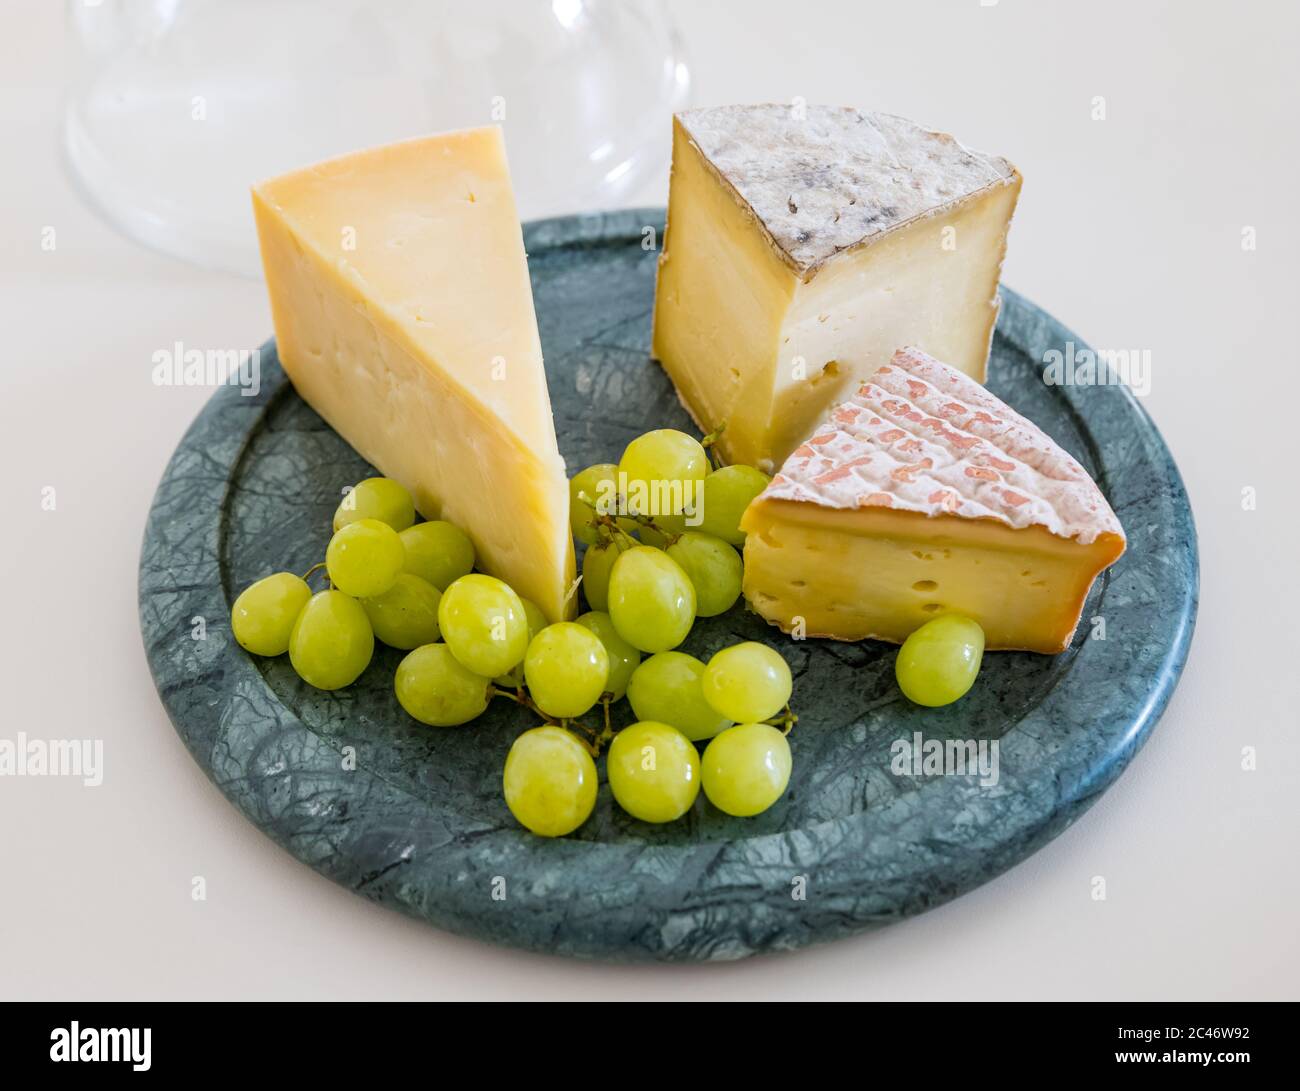 Cheesboard avec cheddar de l'île de Mull, fromage Gorwydd Caerphilly et fromage irlandais Gubbeé avec raisins verts sur comptoir de cuisine blanc Banque D'Images